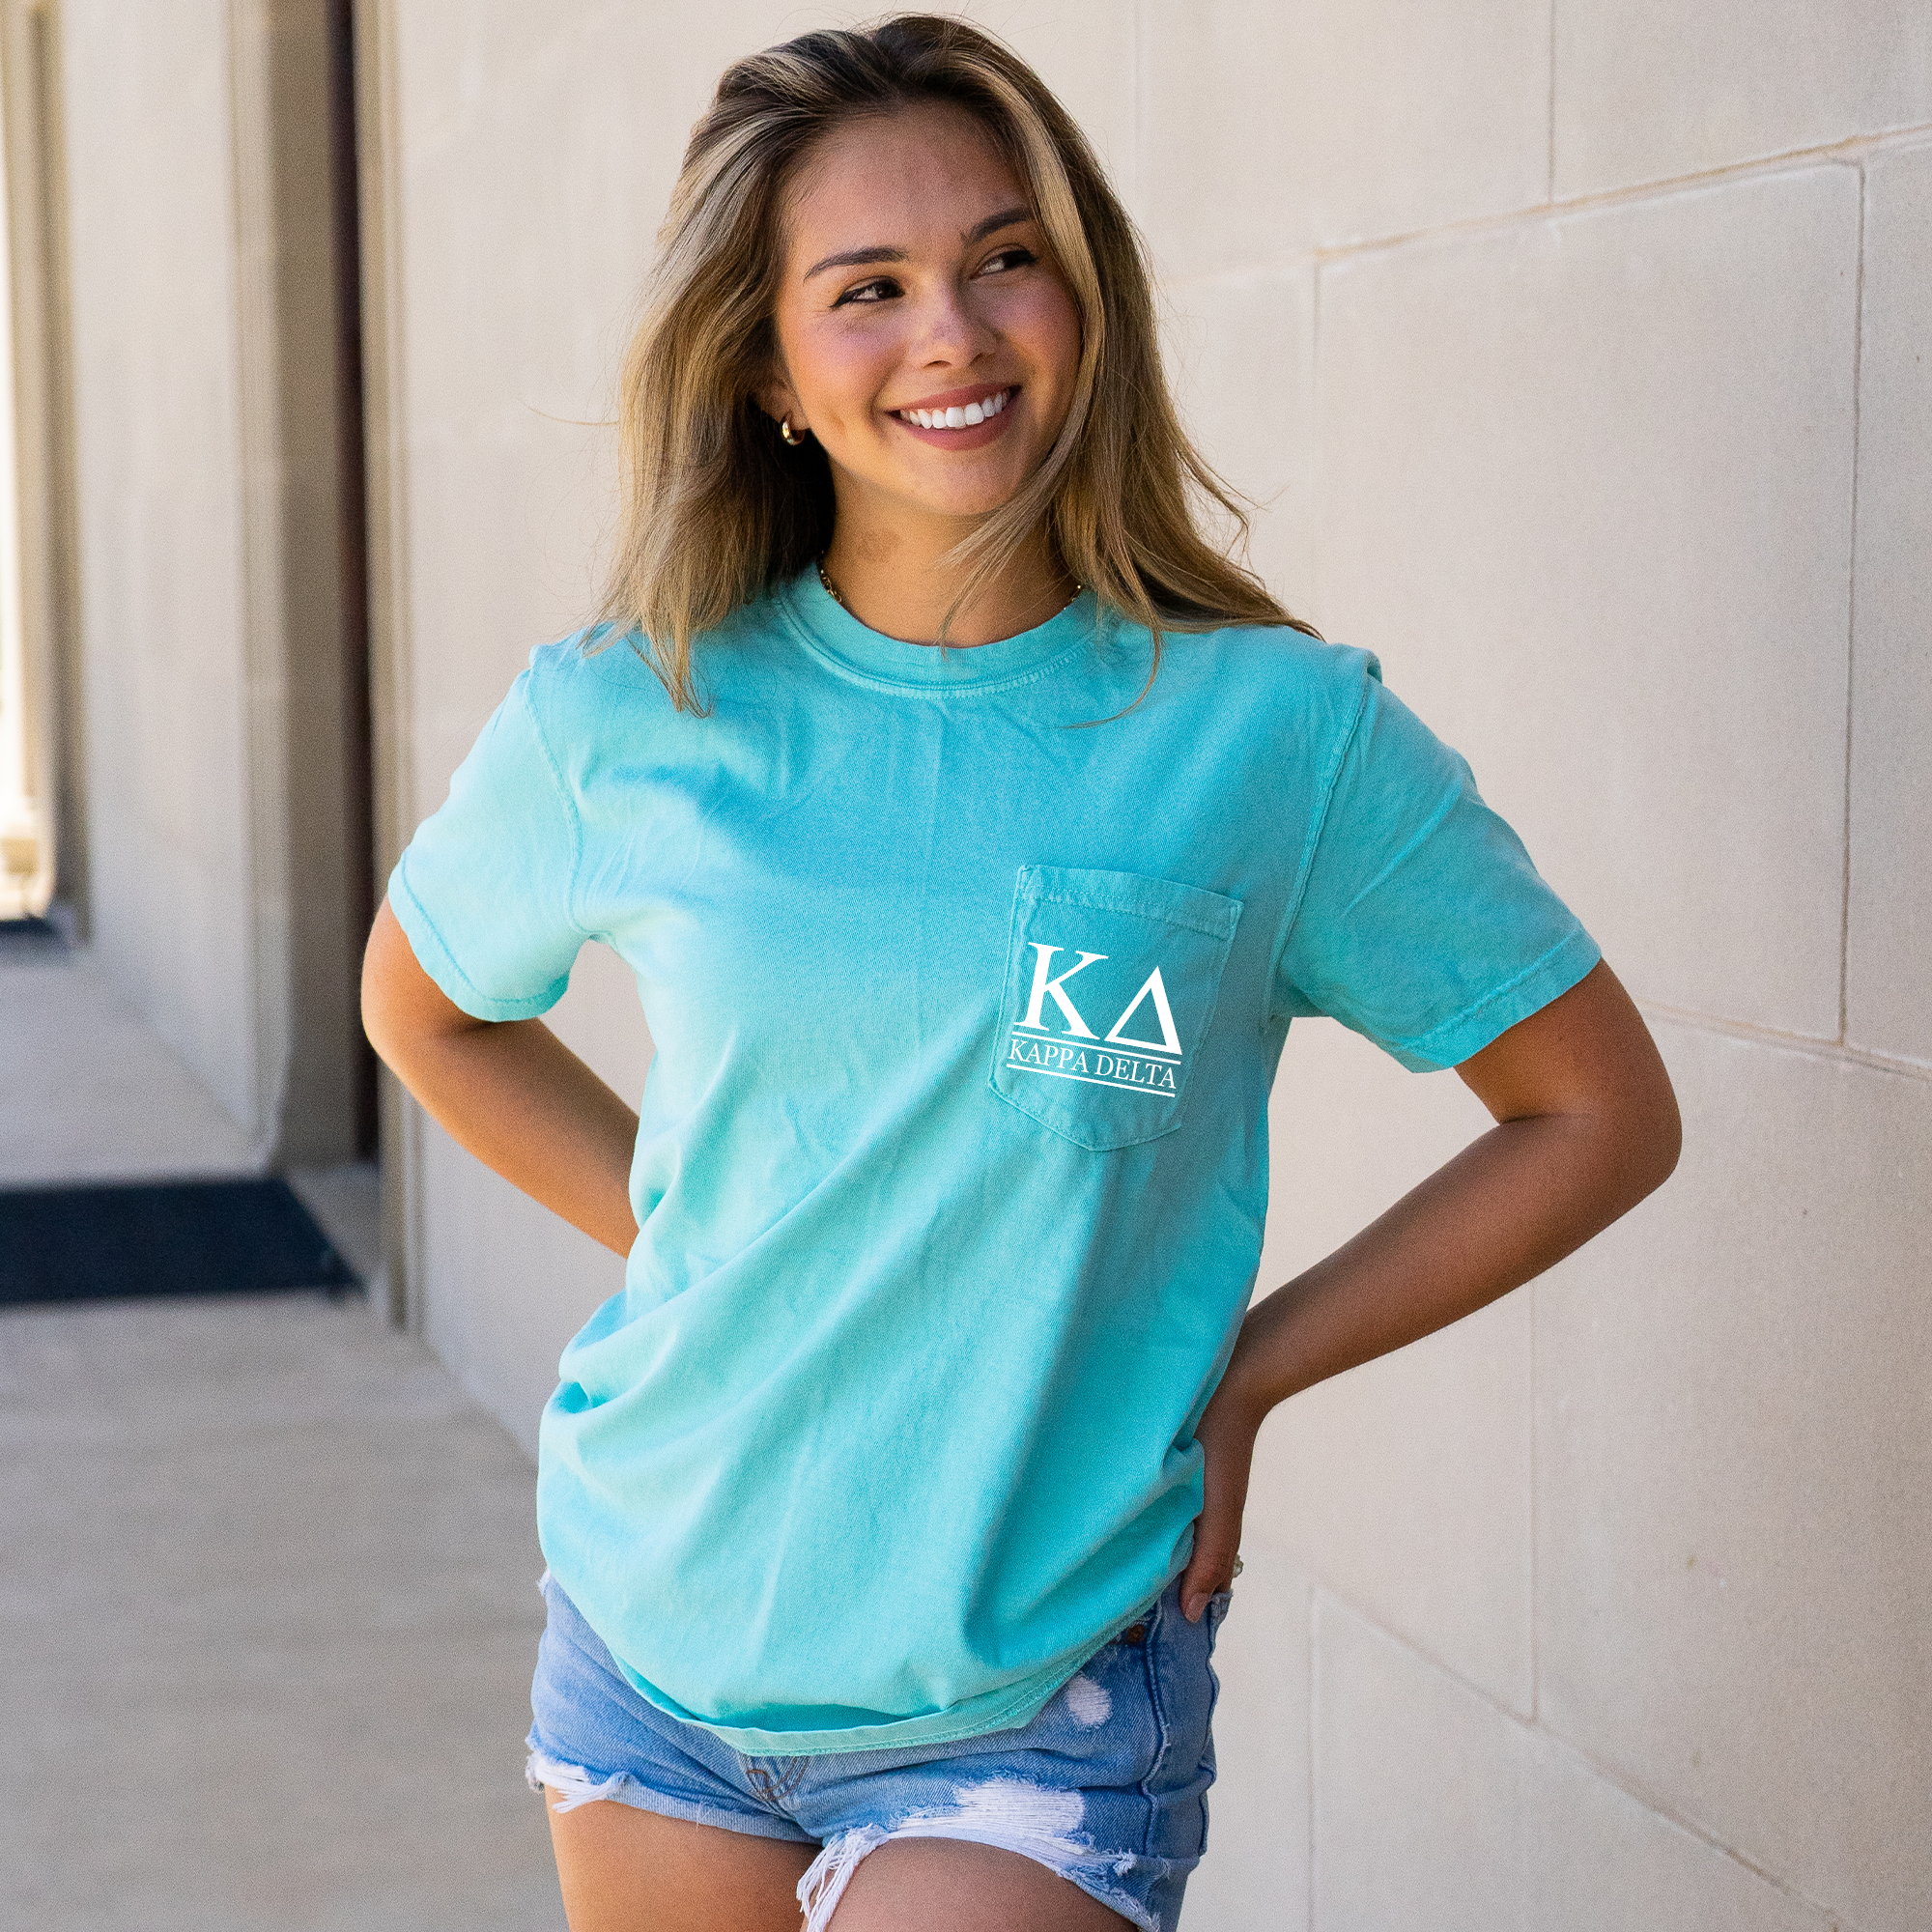 Kappa Delta Block Letters T-Shirt - Mint - Go Greek Chic